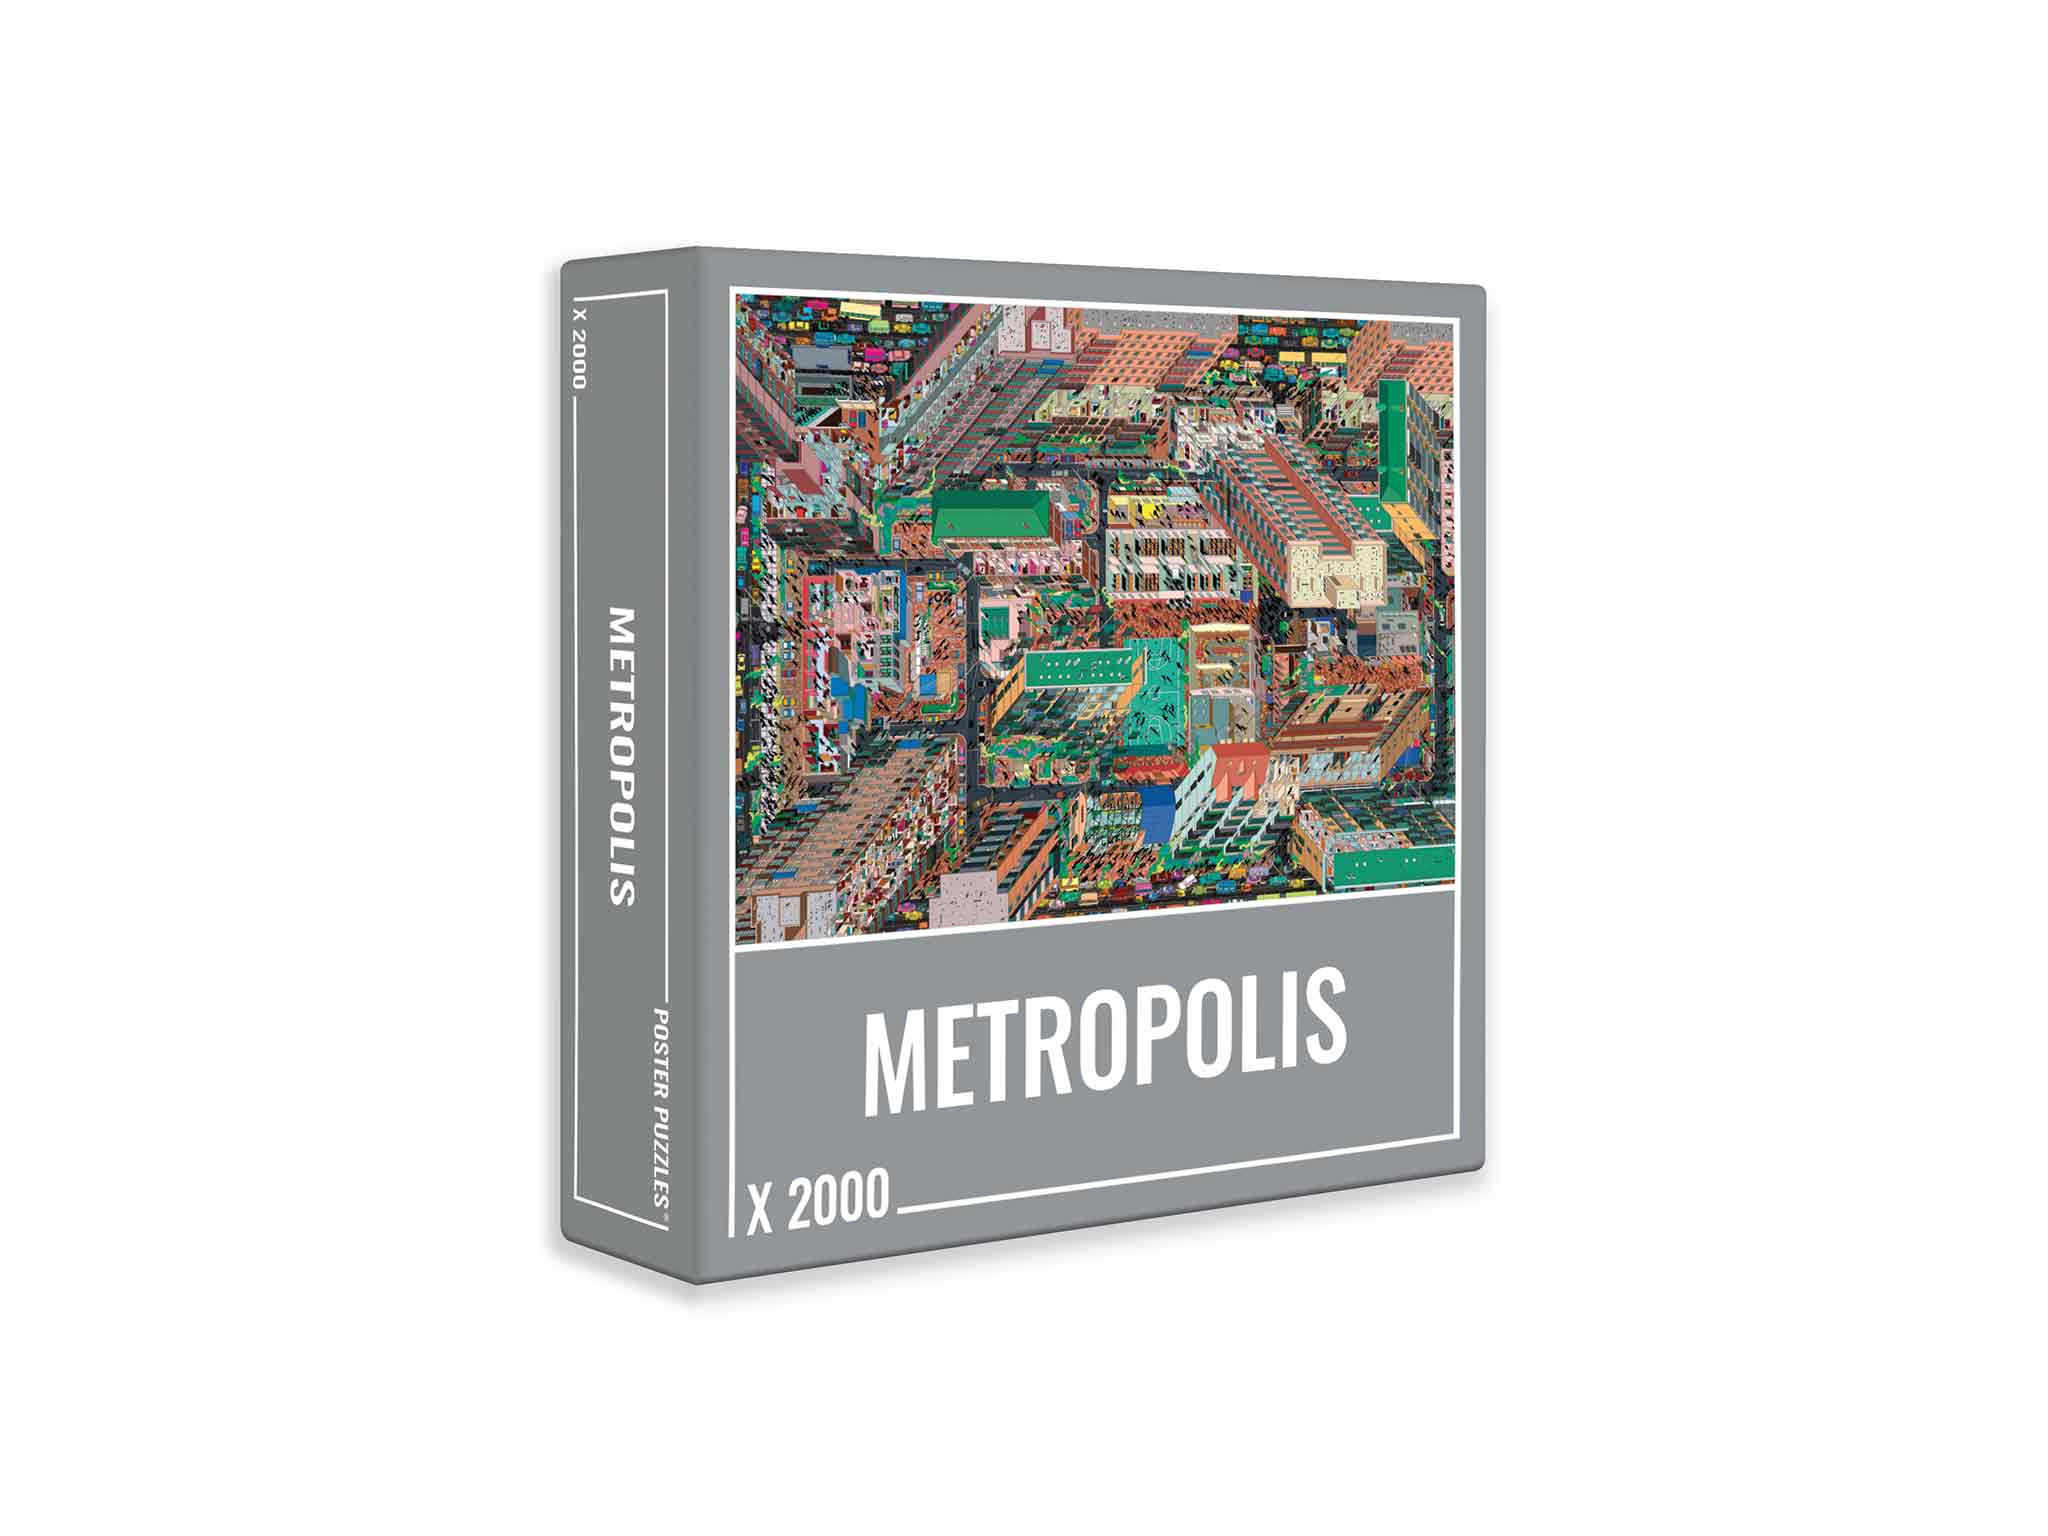 Metropolis: Cloudberries